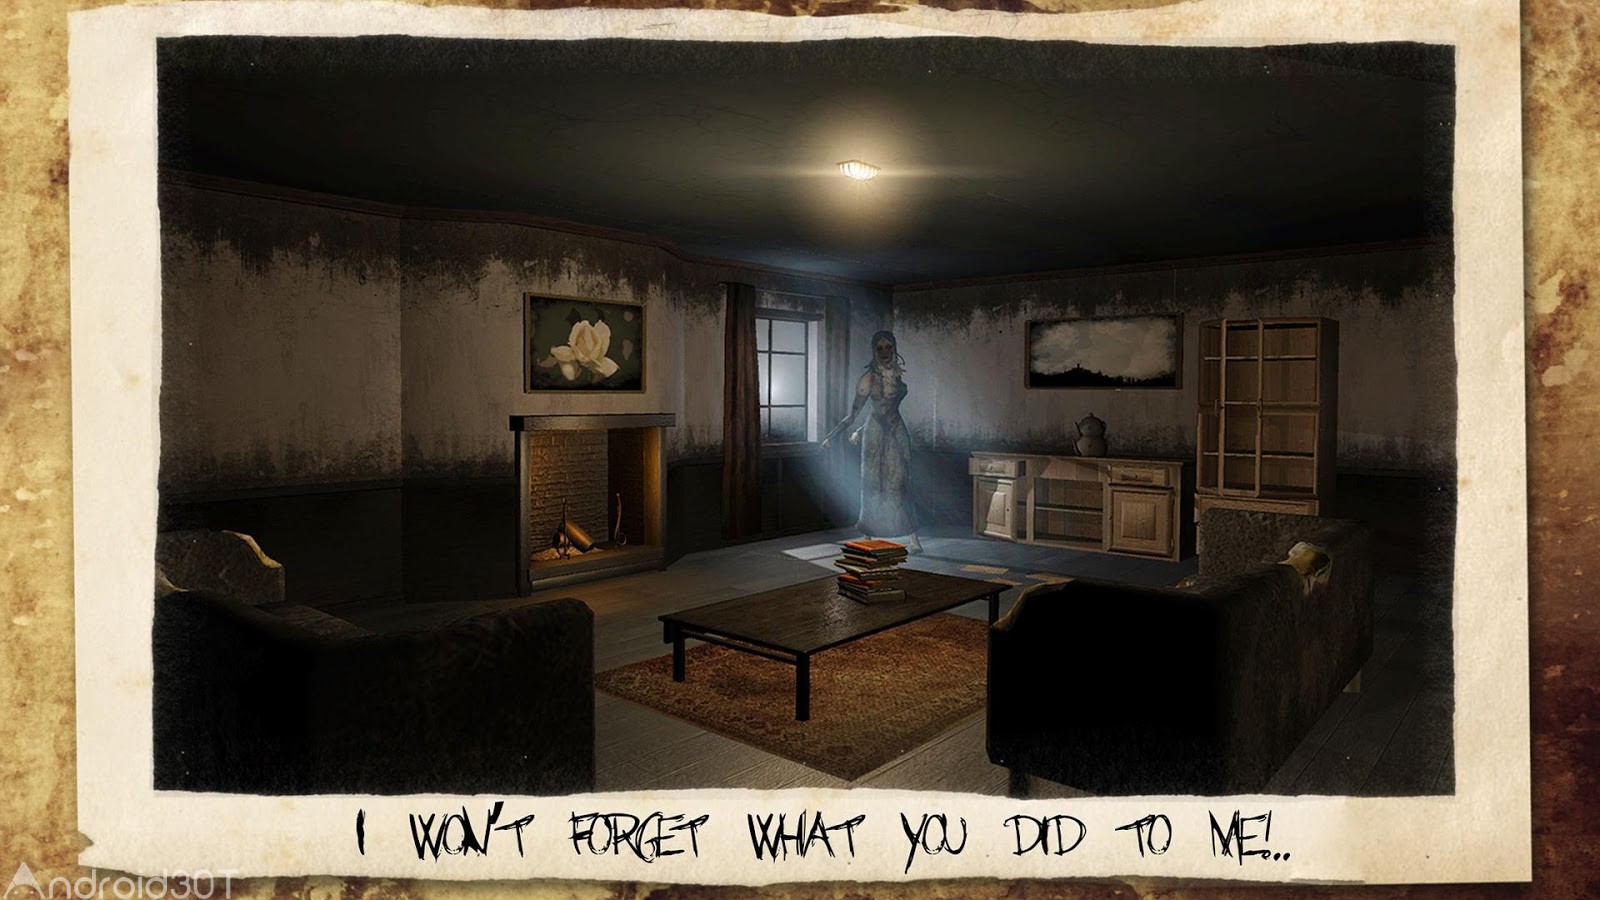 دانلود The Fear 2 Creepy Scream House 2.4.7 – نسخه دوم بازی ترسناک خانه وحشت اندروید